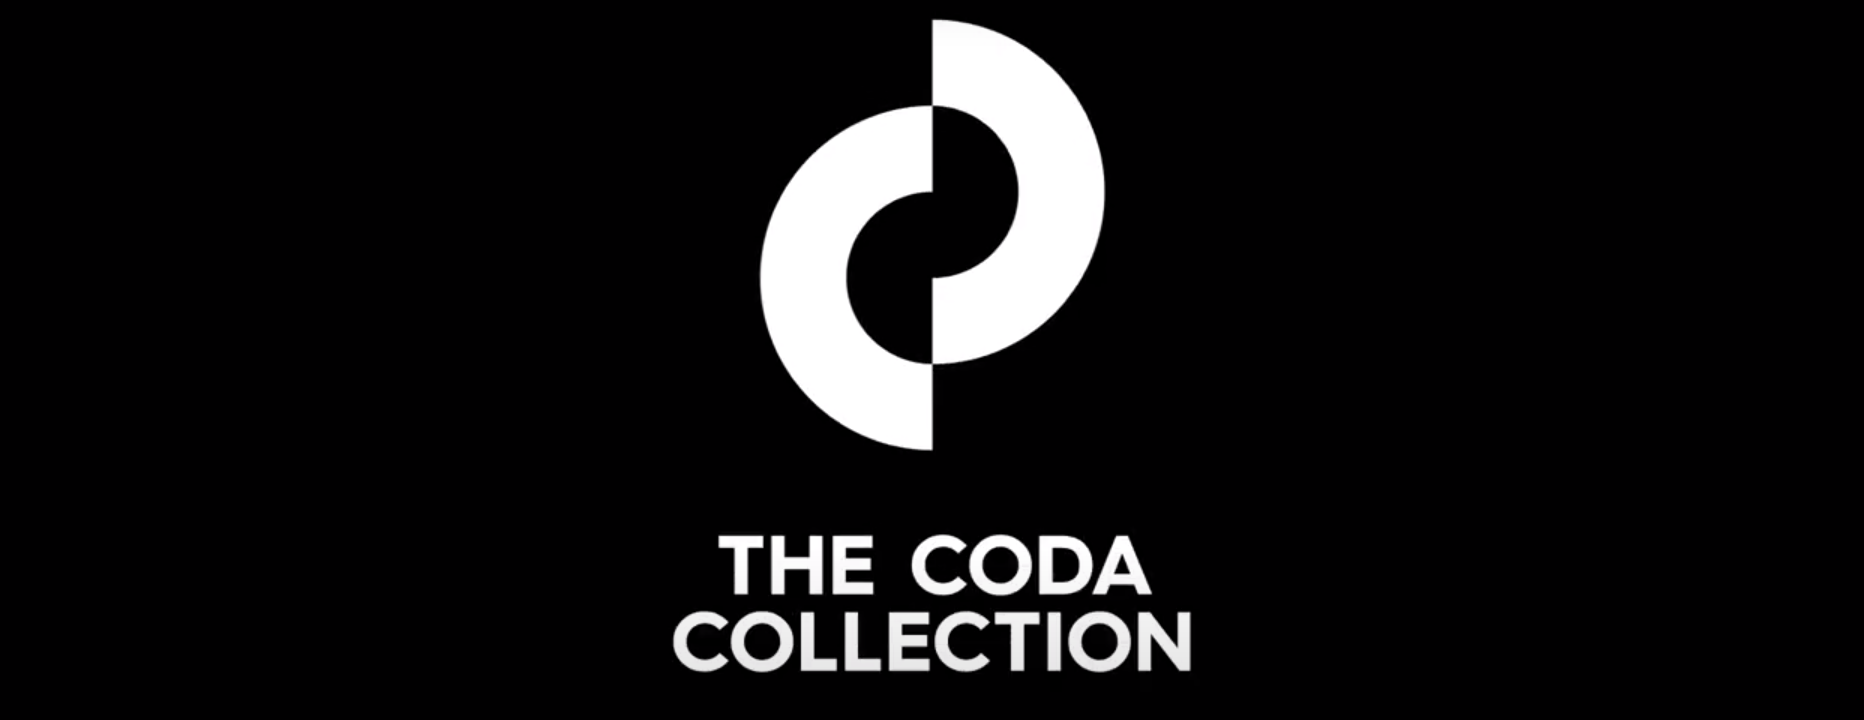 The Coda Collection